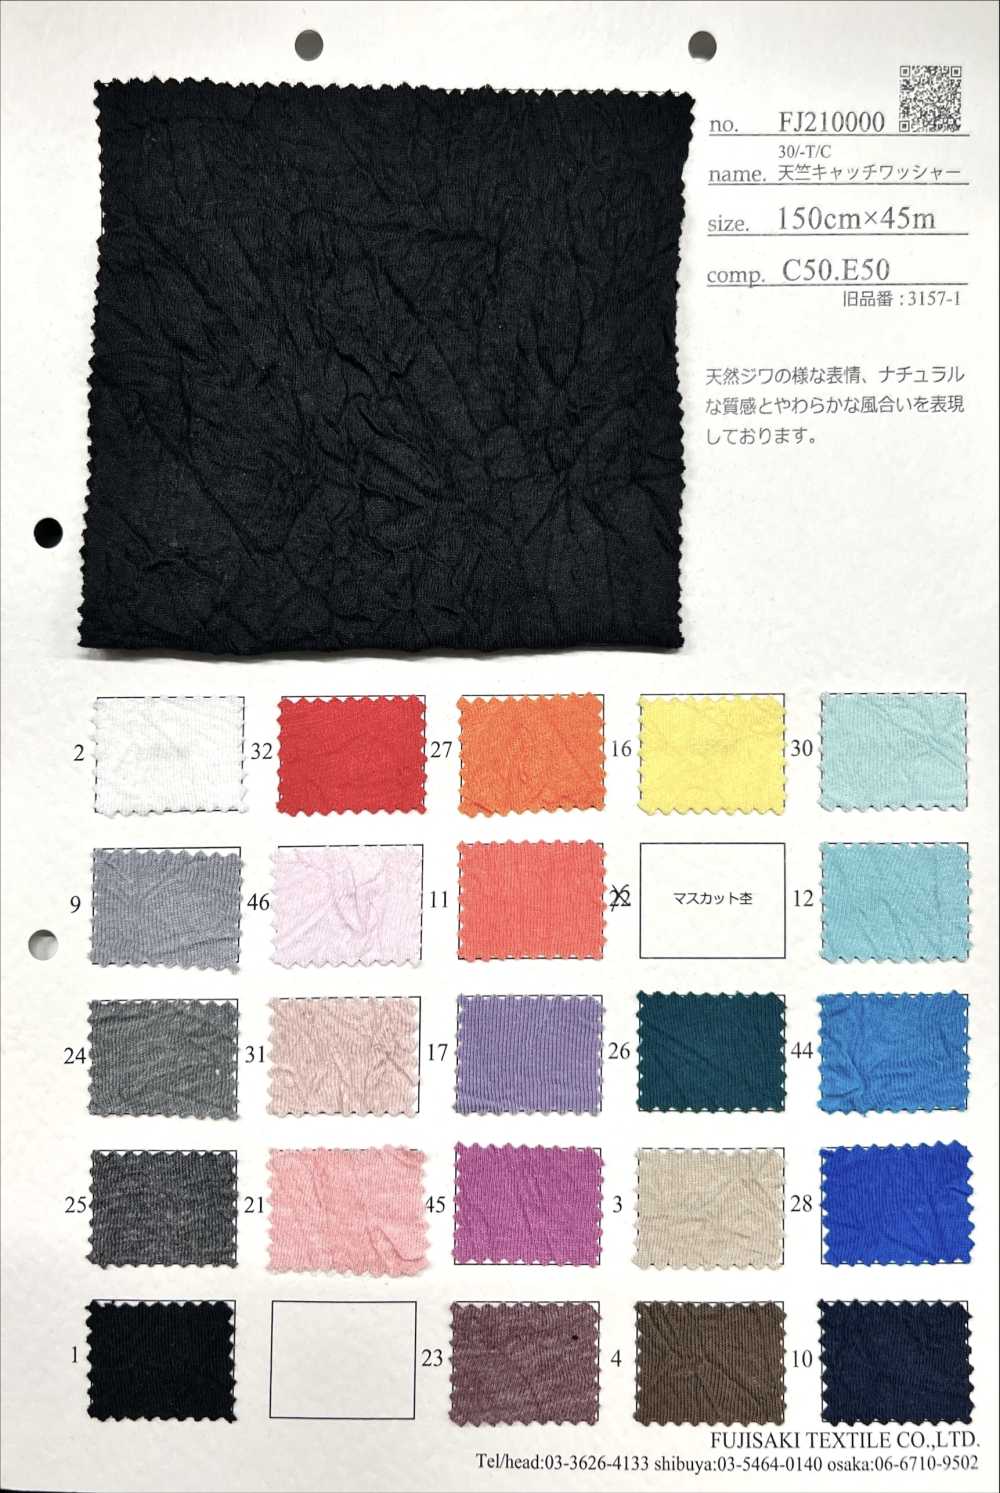 FJ210000 Procesamiento De Lavadora De Captura De Jersey 30/-T/C[Fabrica Textil] Fujisaki Textile